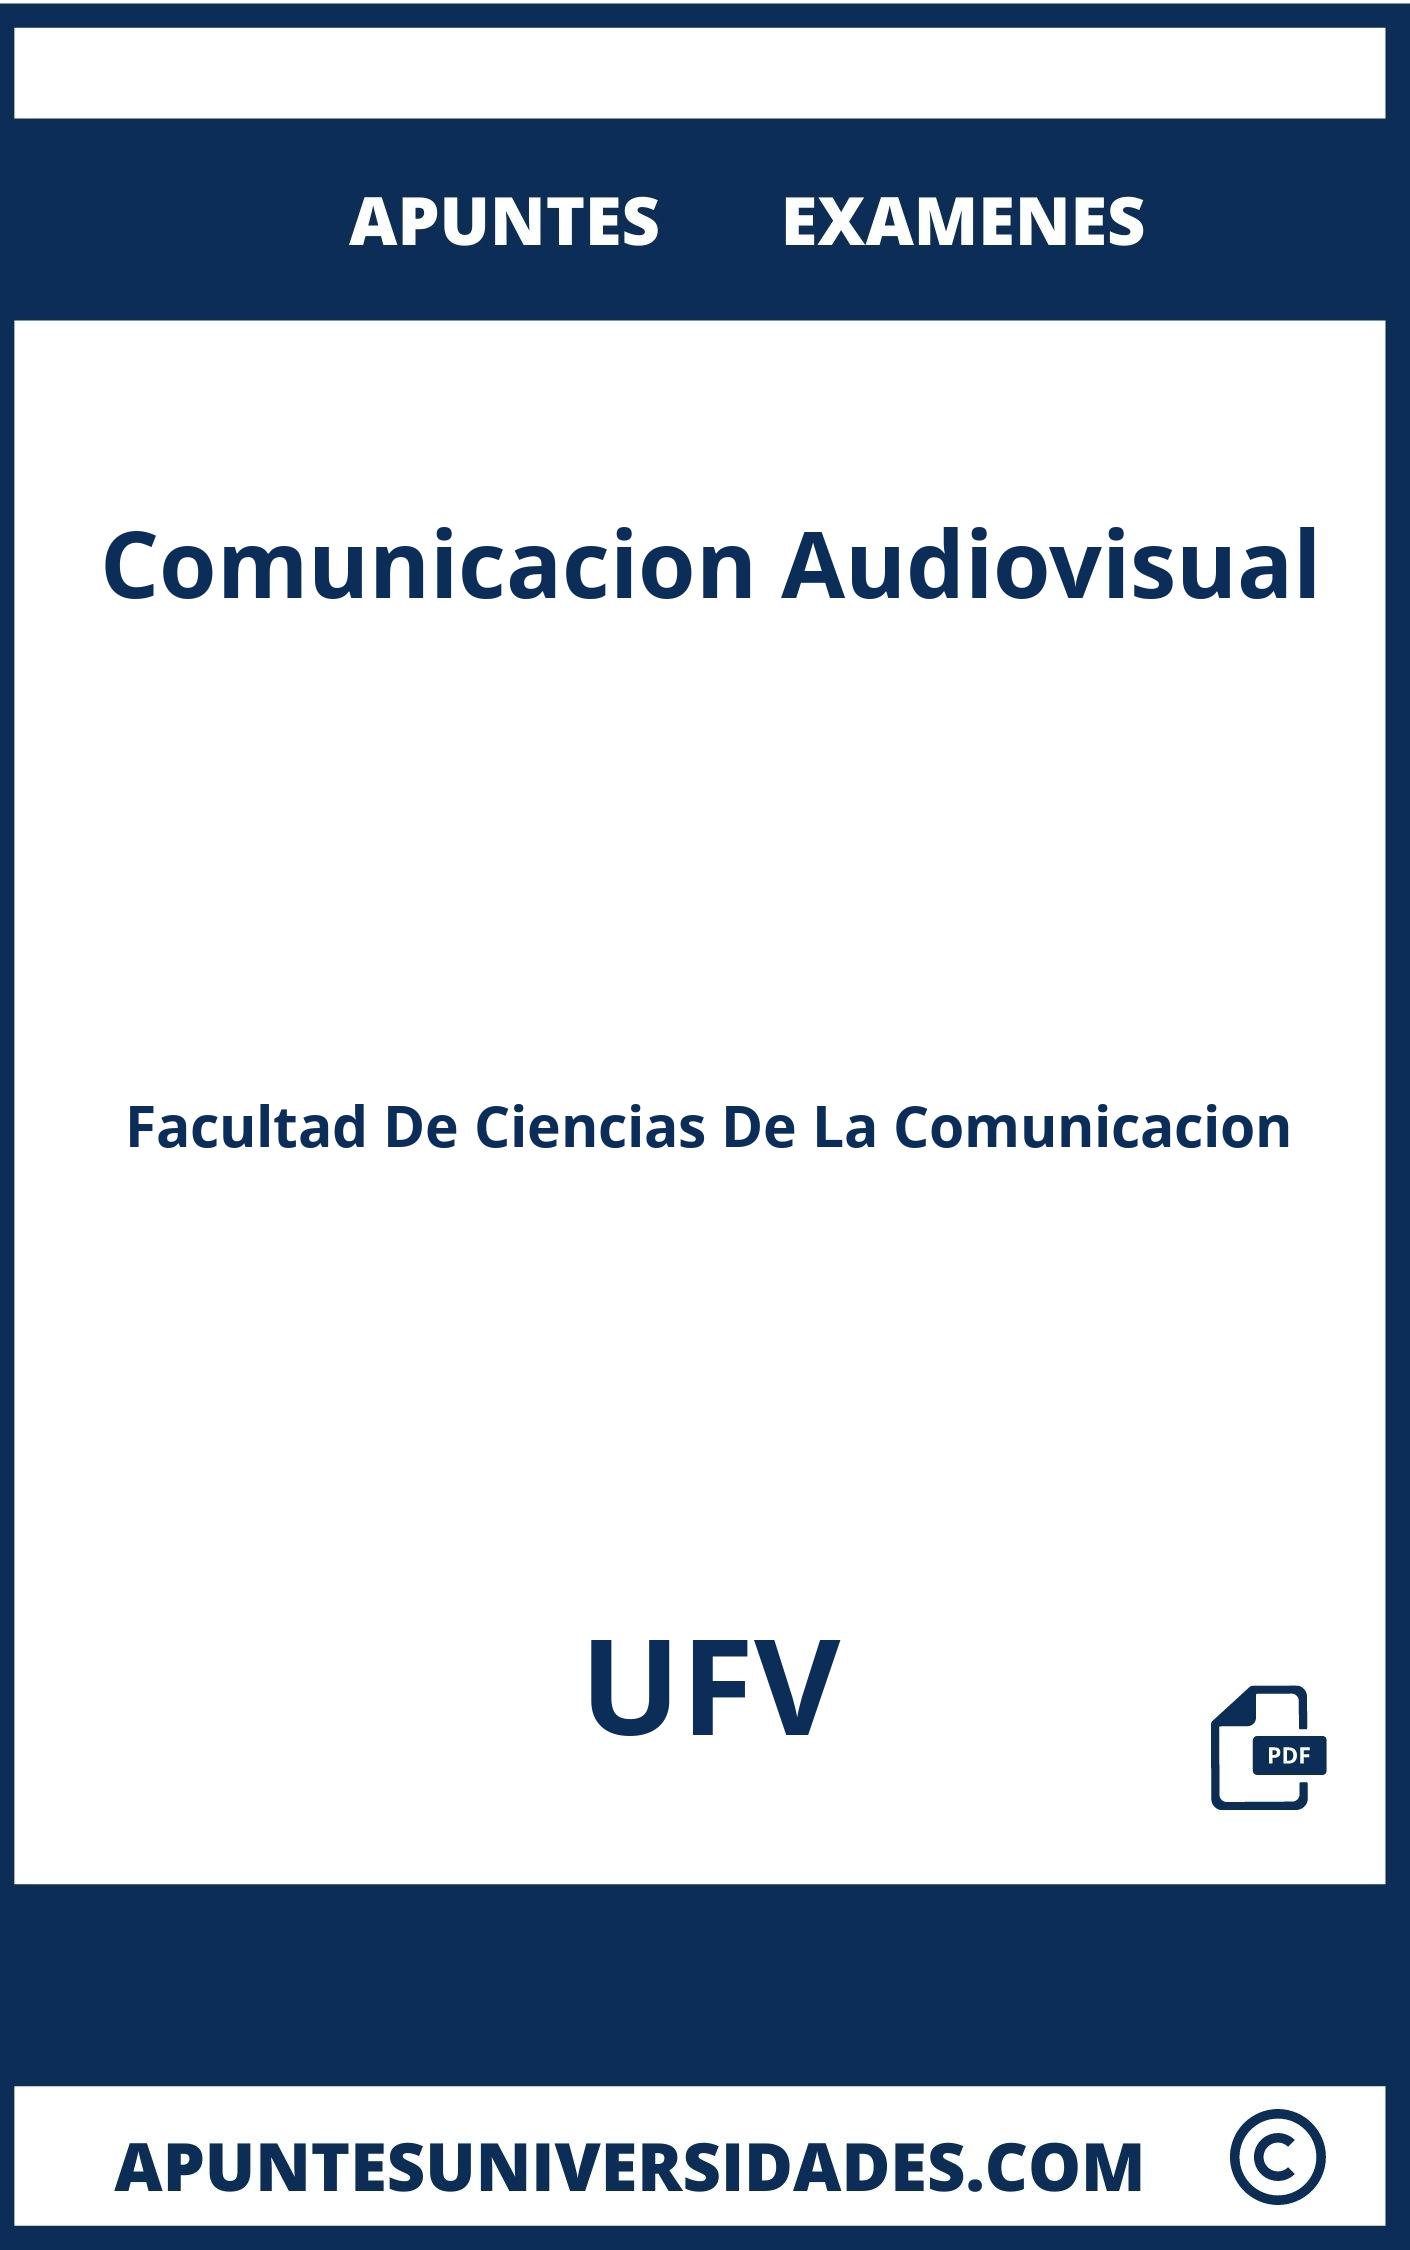 Apuntes y Examenes de Comunicacion Audiovisual UFV